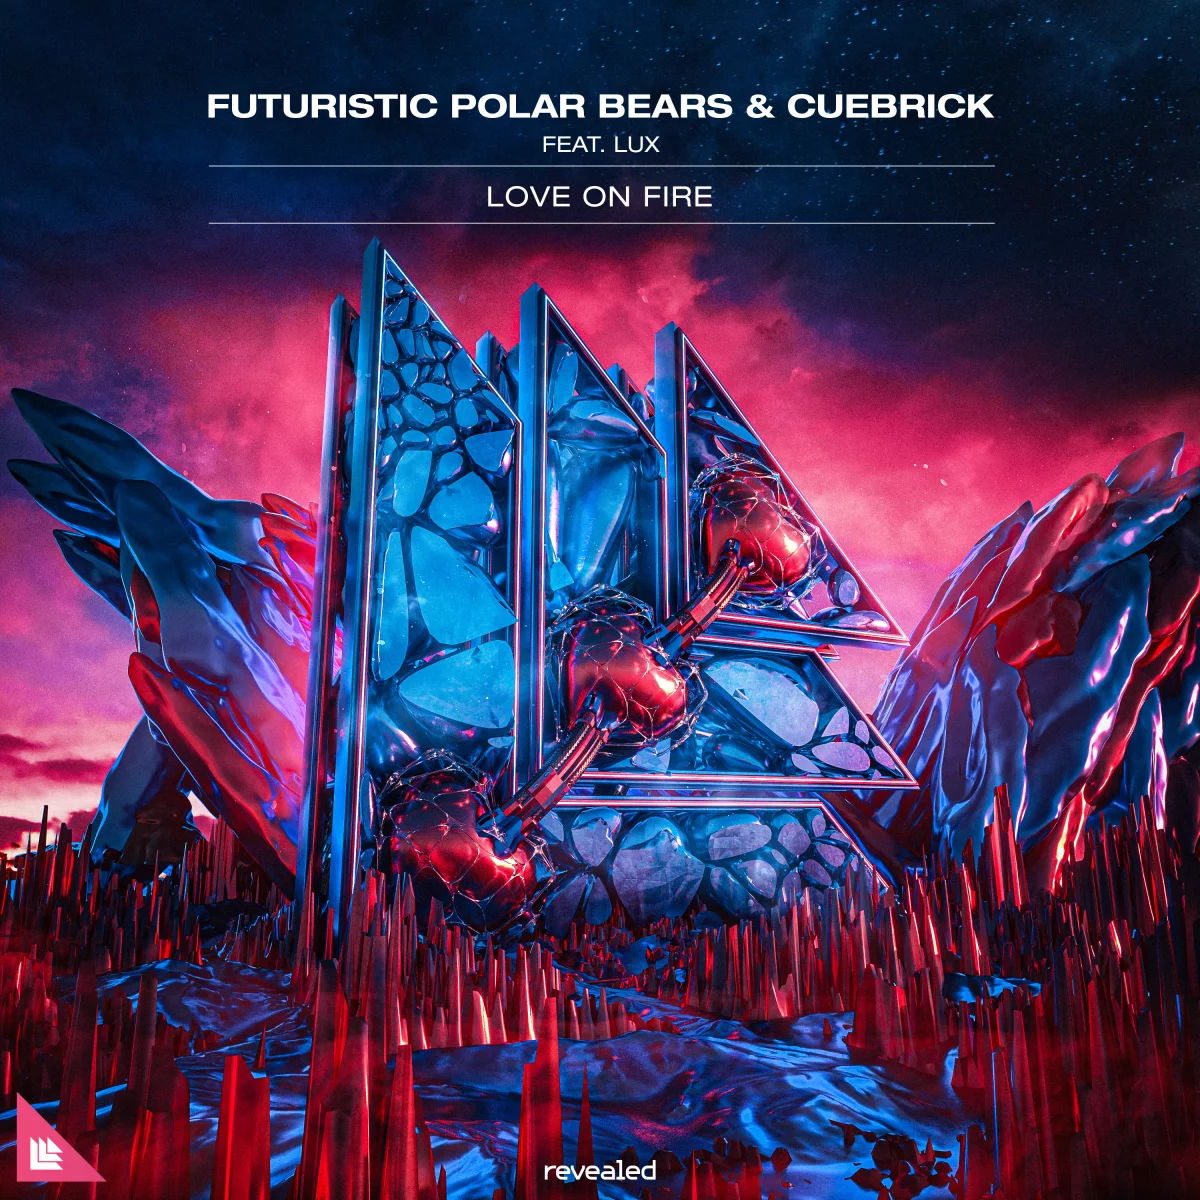 Love On Fire - Futuristic Polar Bears⁠ & Cuebrick⁠ feat. LUX⁠